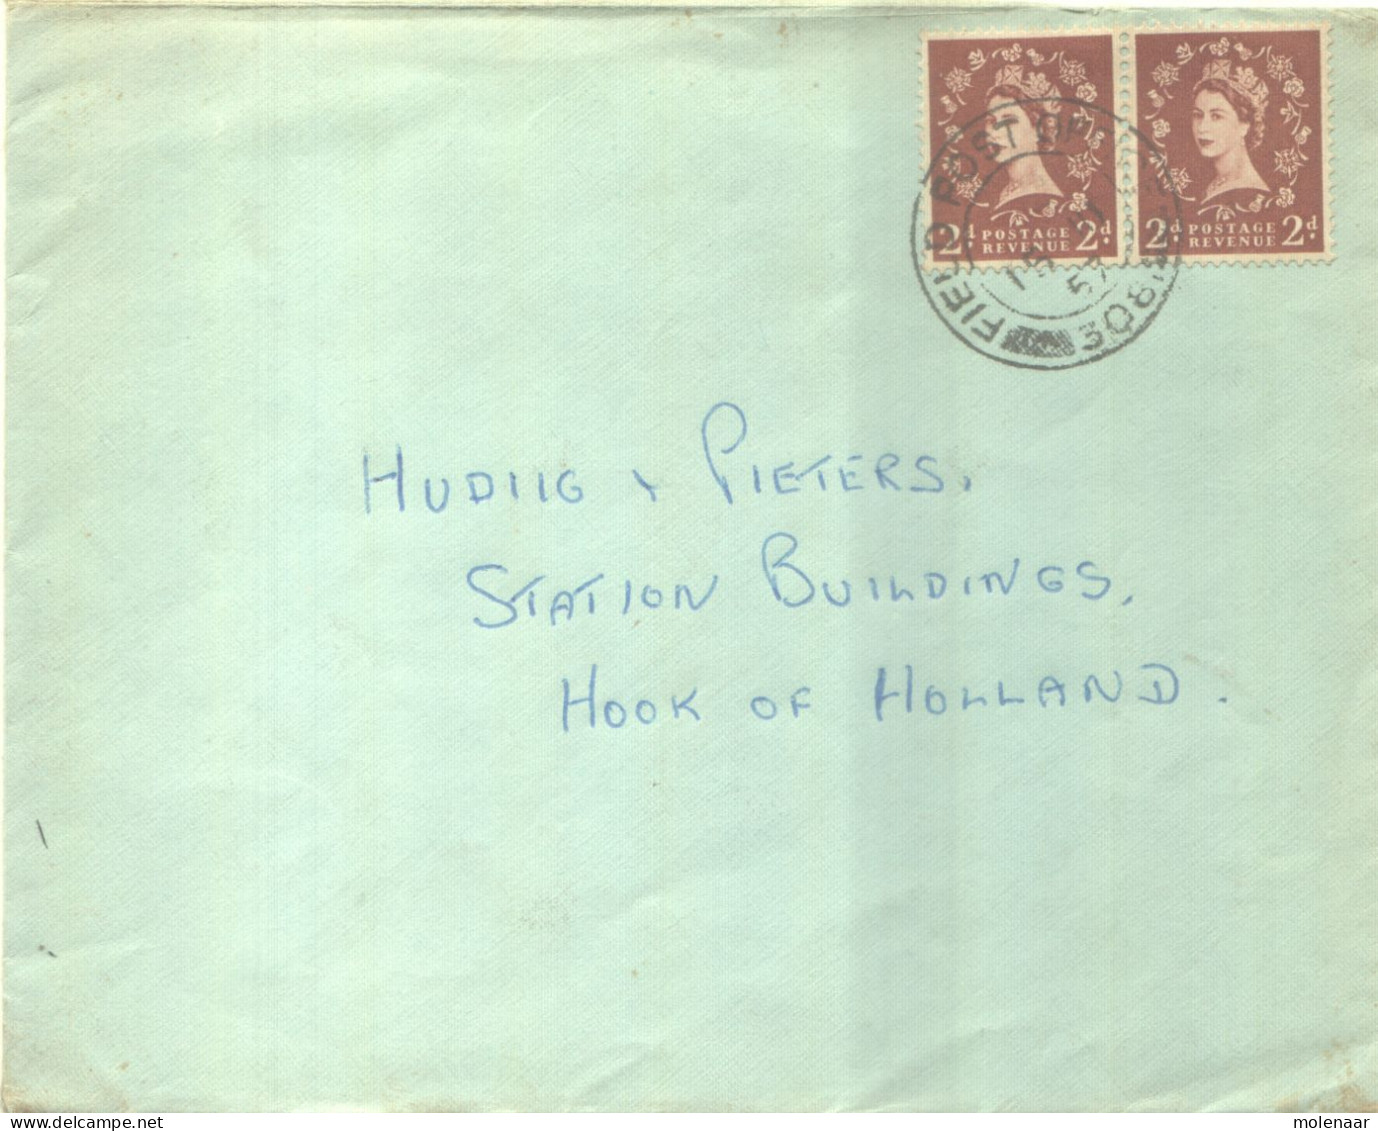 Postzegels > Europa > Groot-Brittannië > 1952-2022 Elizabeth II > 1971-1980  > Brief Met 2 Postzegels (16814) - Covers & Documents